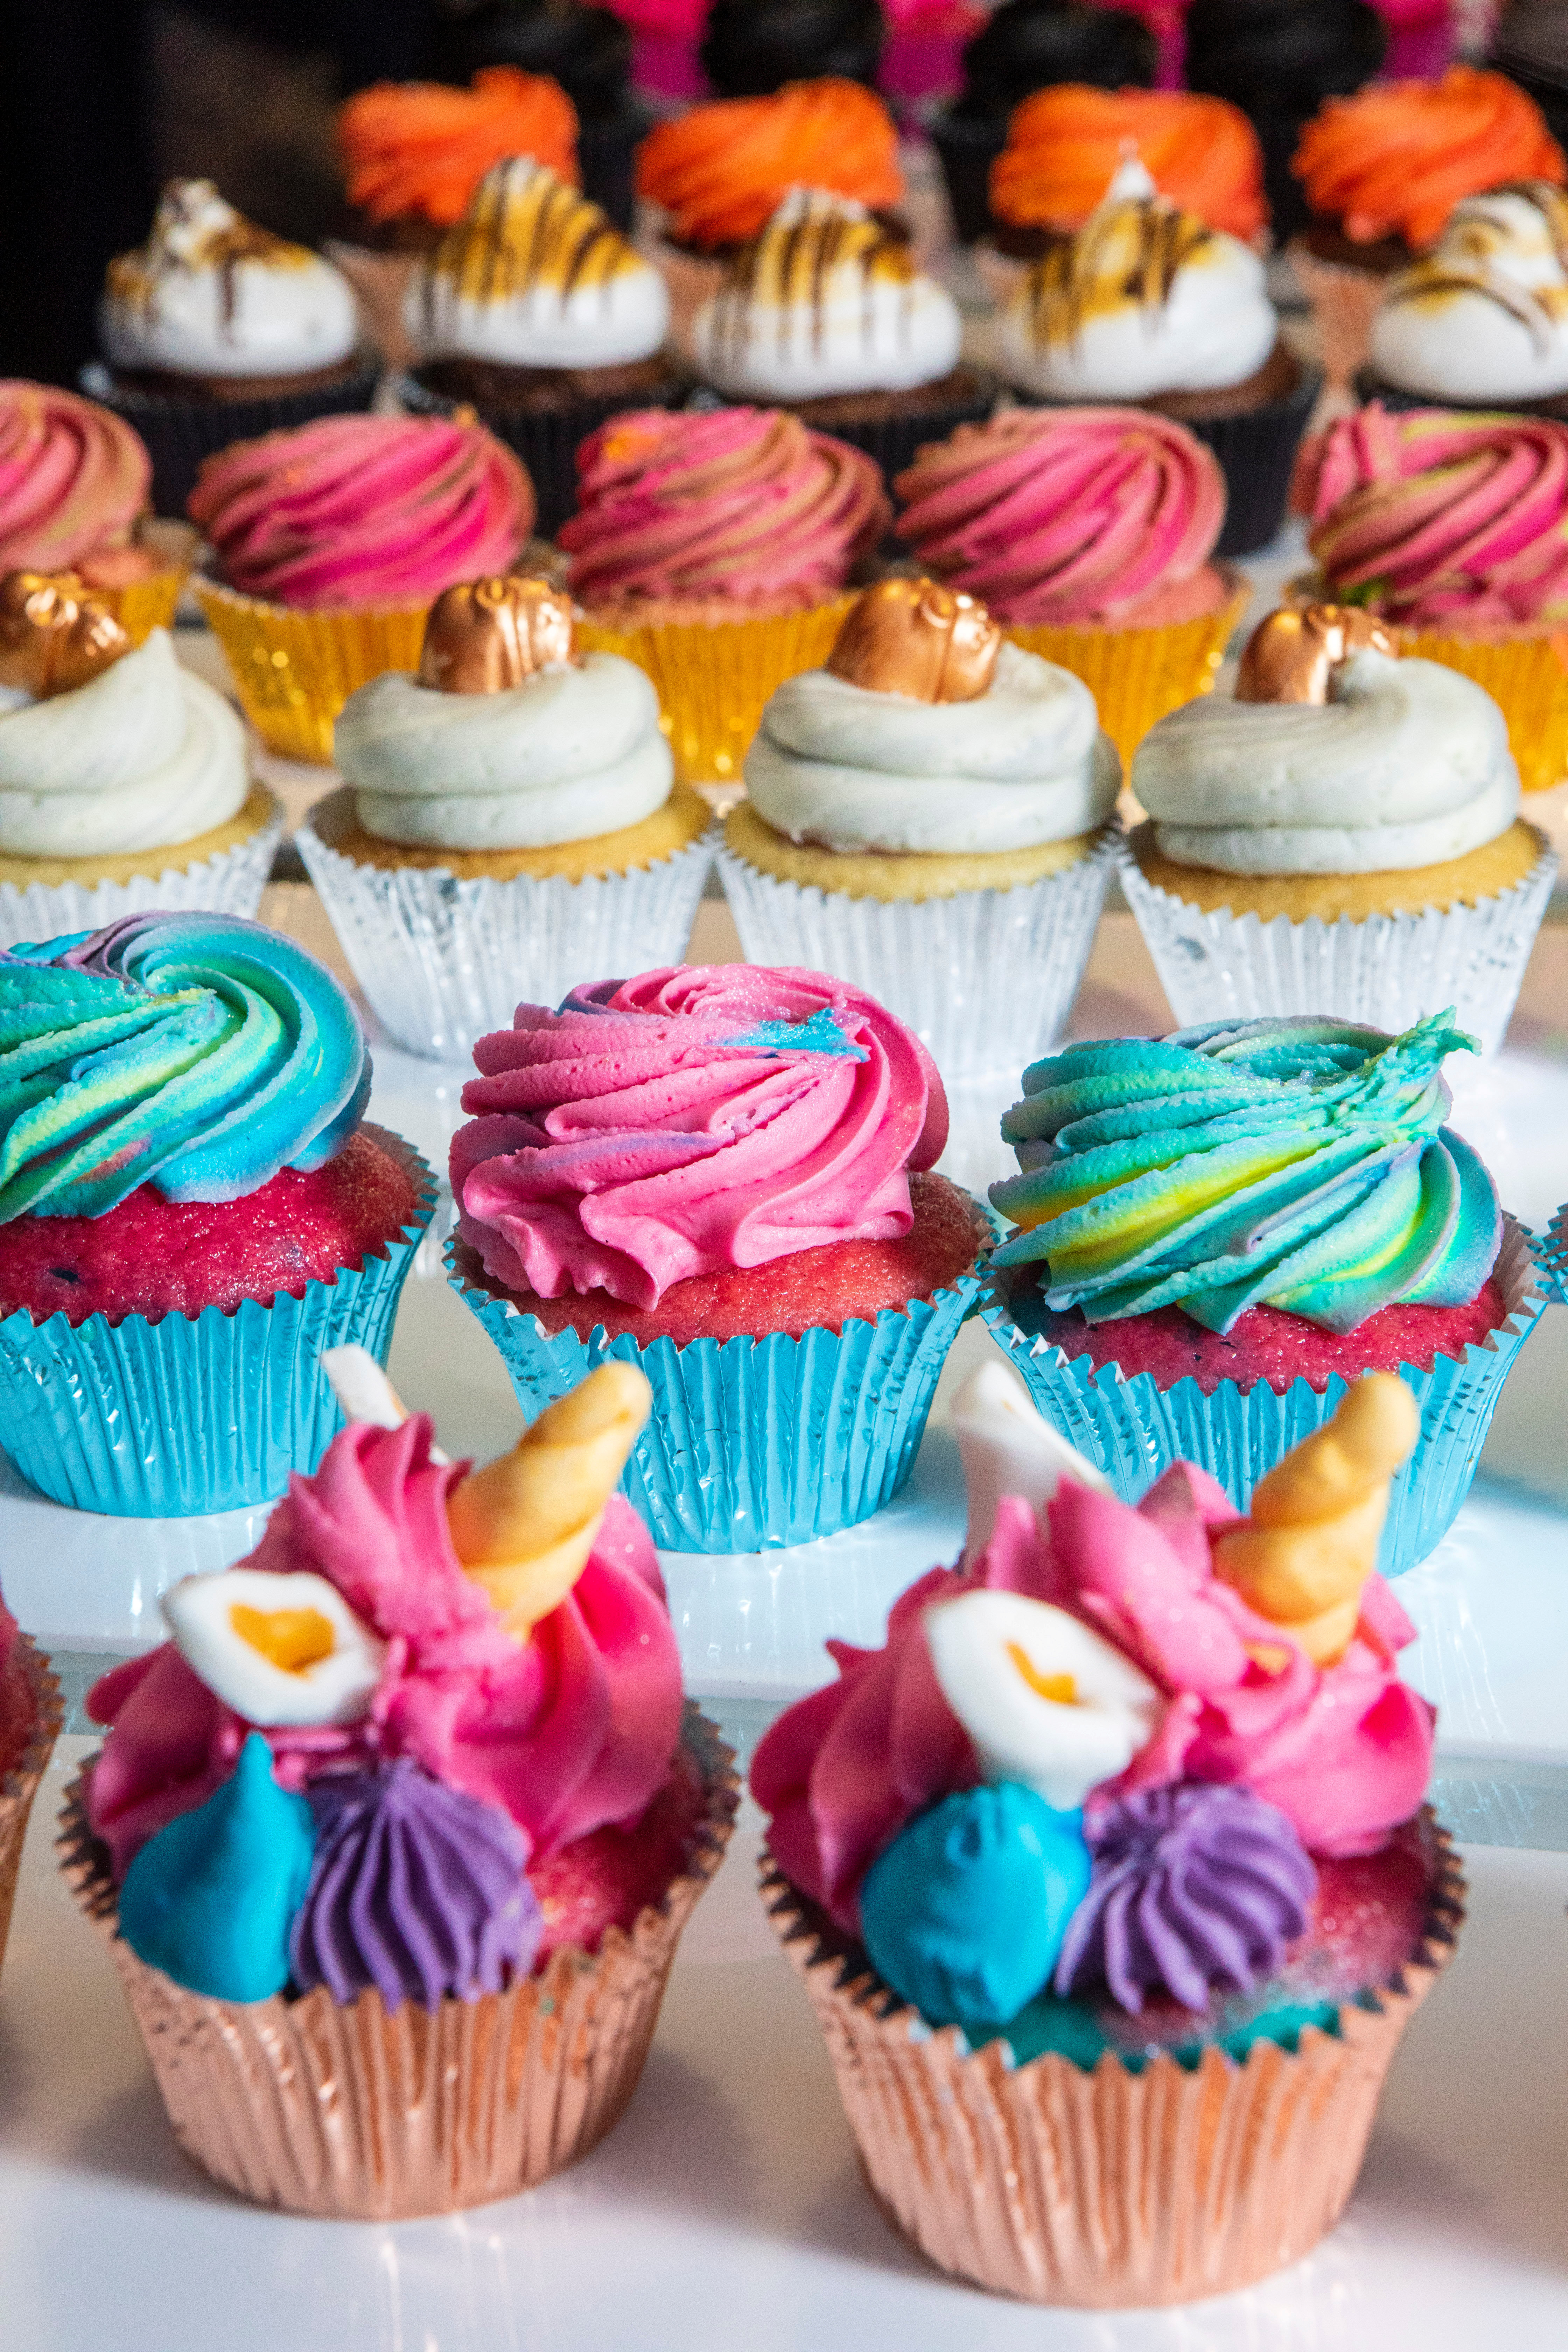 Die Umfrage ergab, dass ein Mitarbeiter, der an seinem Geburtstag einen Kuchen erhält, viel bewirken kann